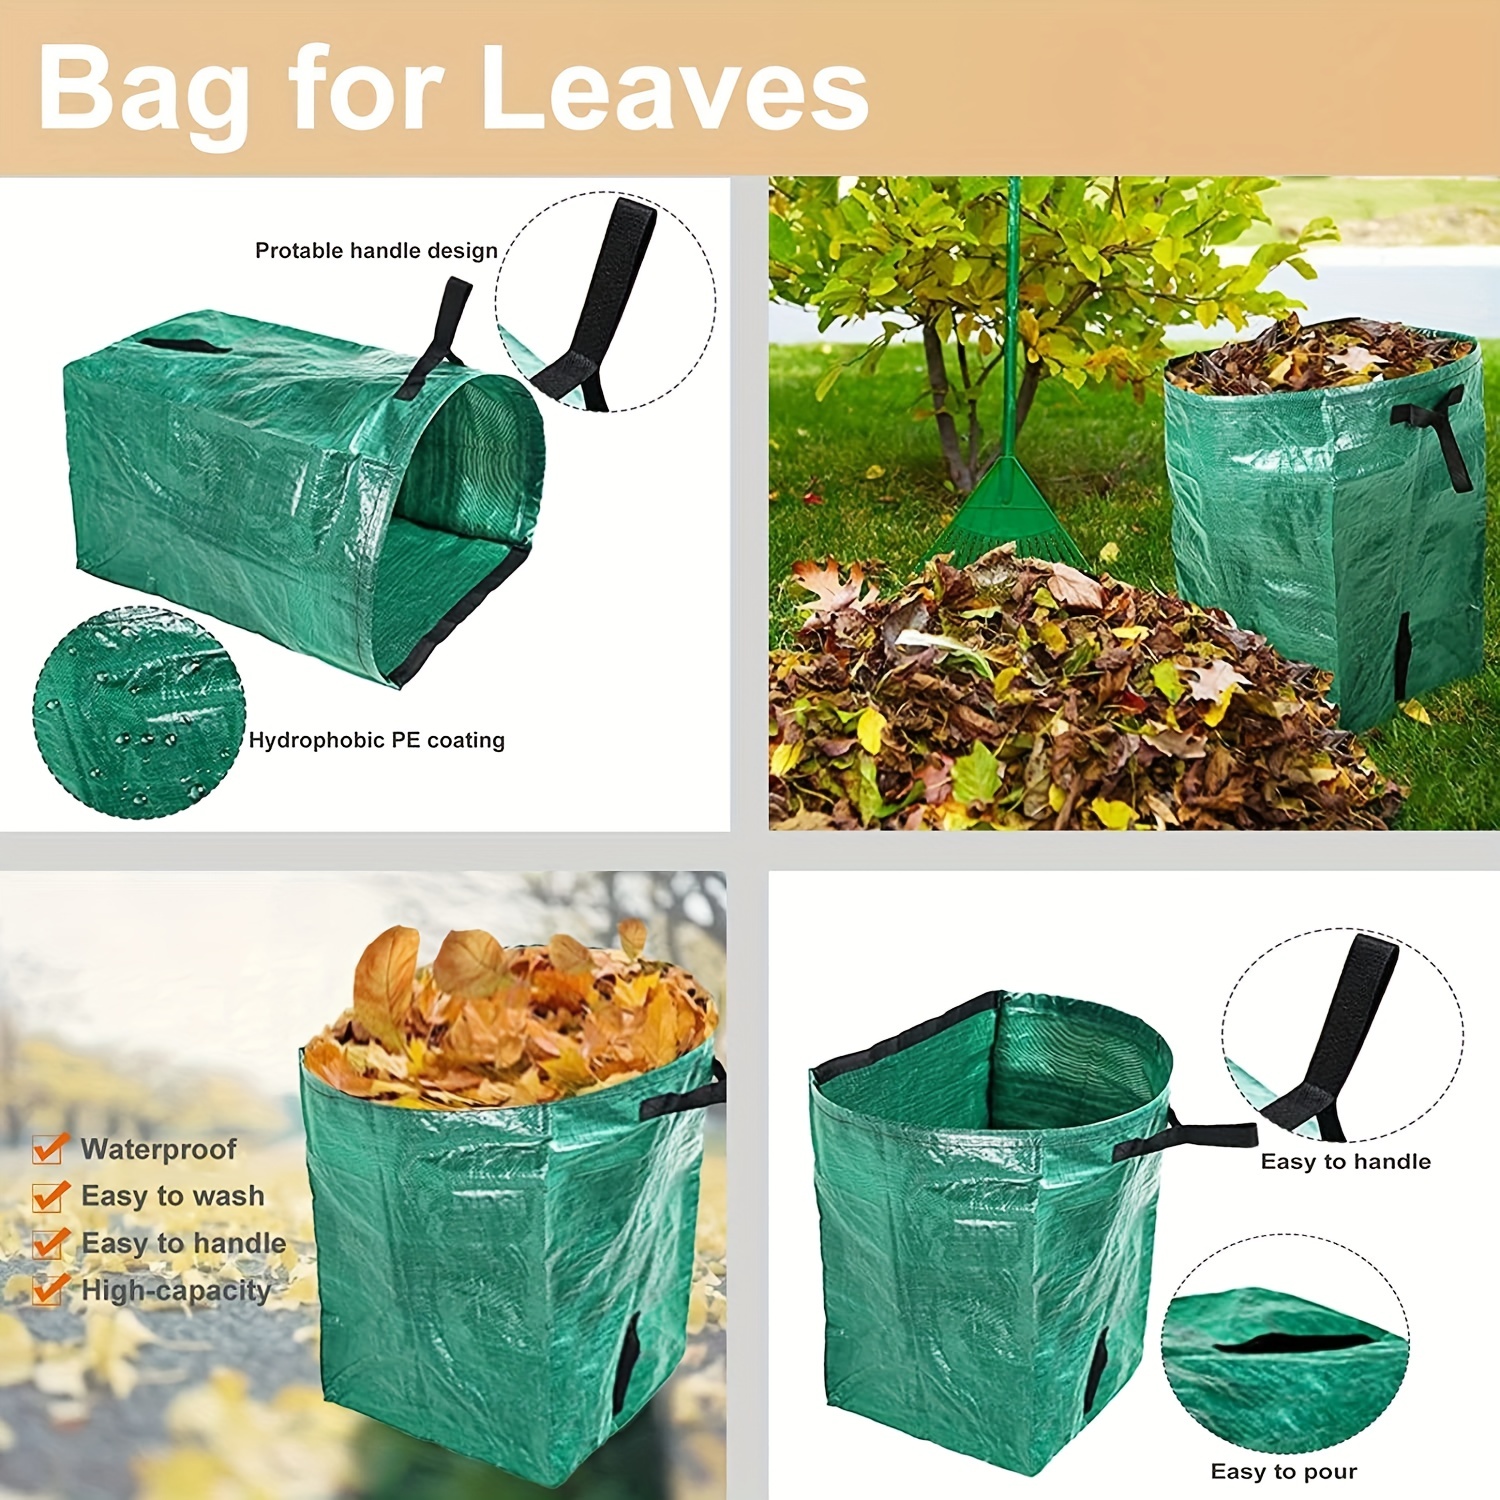 11 Reusable Garden Waste Bags ideas  garden waste bags, garden bags, waste